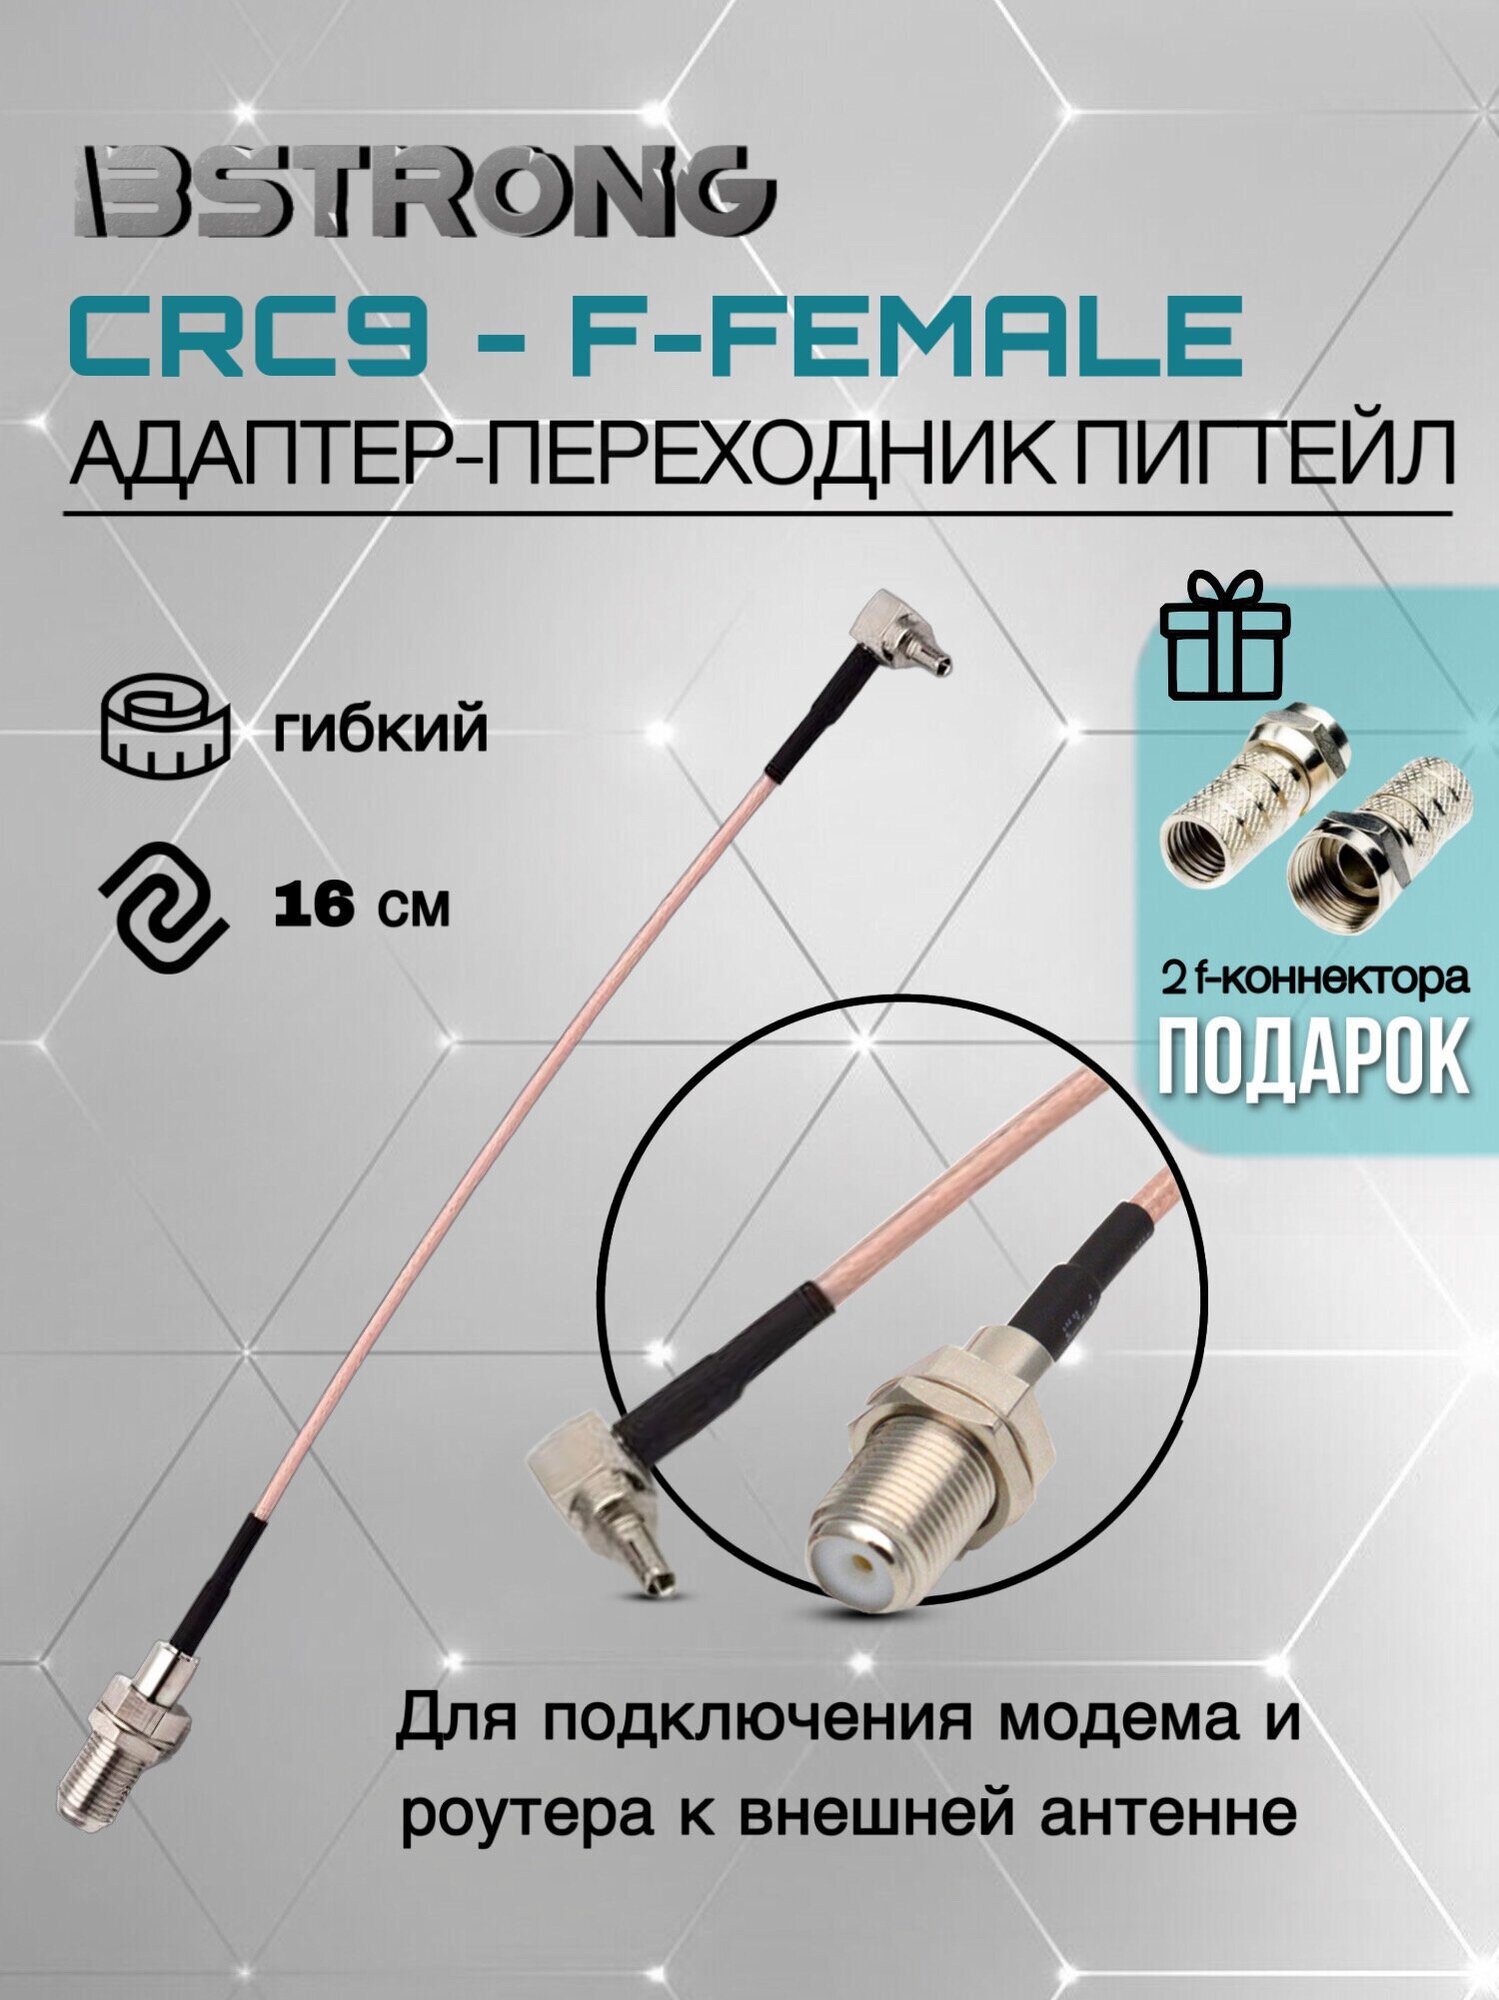 Адаптер-переходник Пигтейл CRC9-F-female 15 + 2 f-разъема для подключения модема роутера к внешней антенне